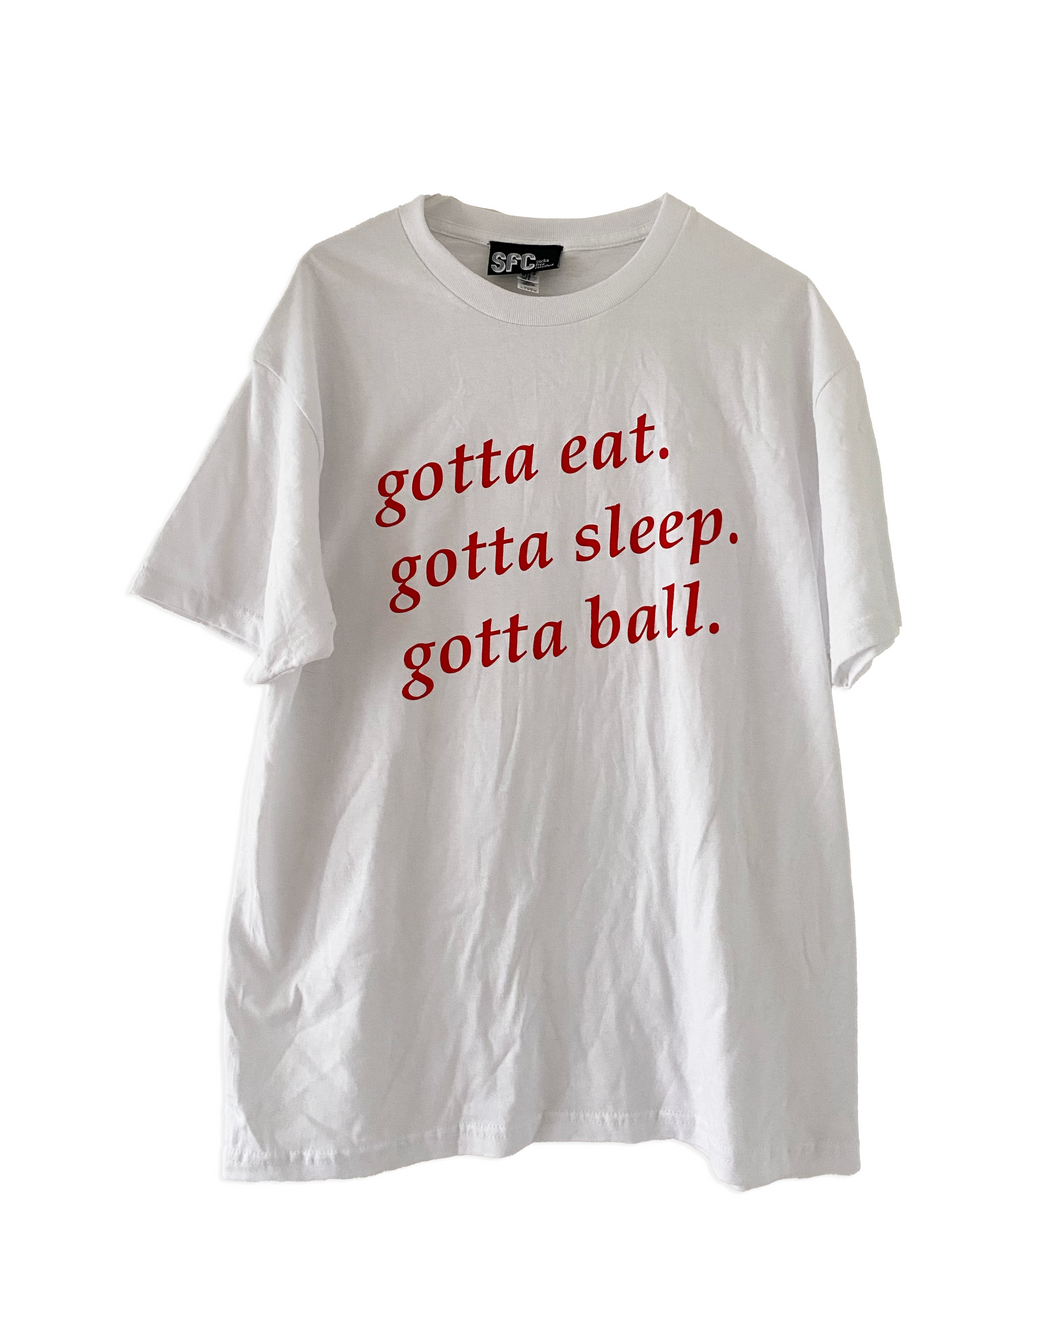 Gotta Ball T-shirt